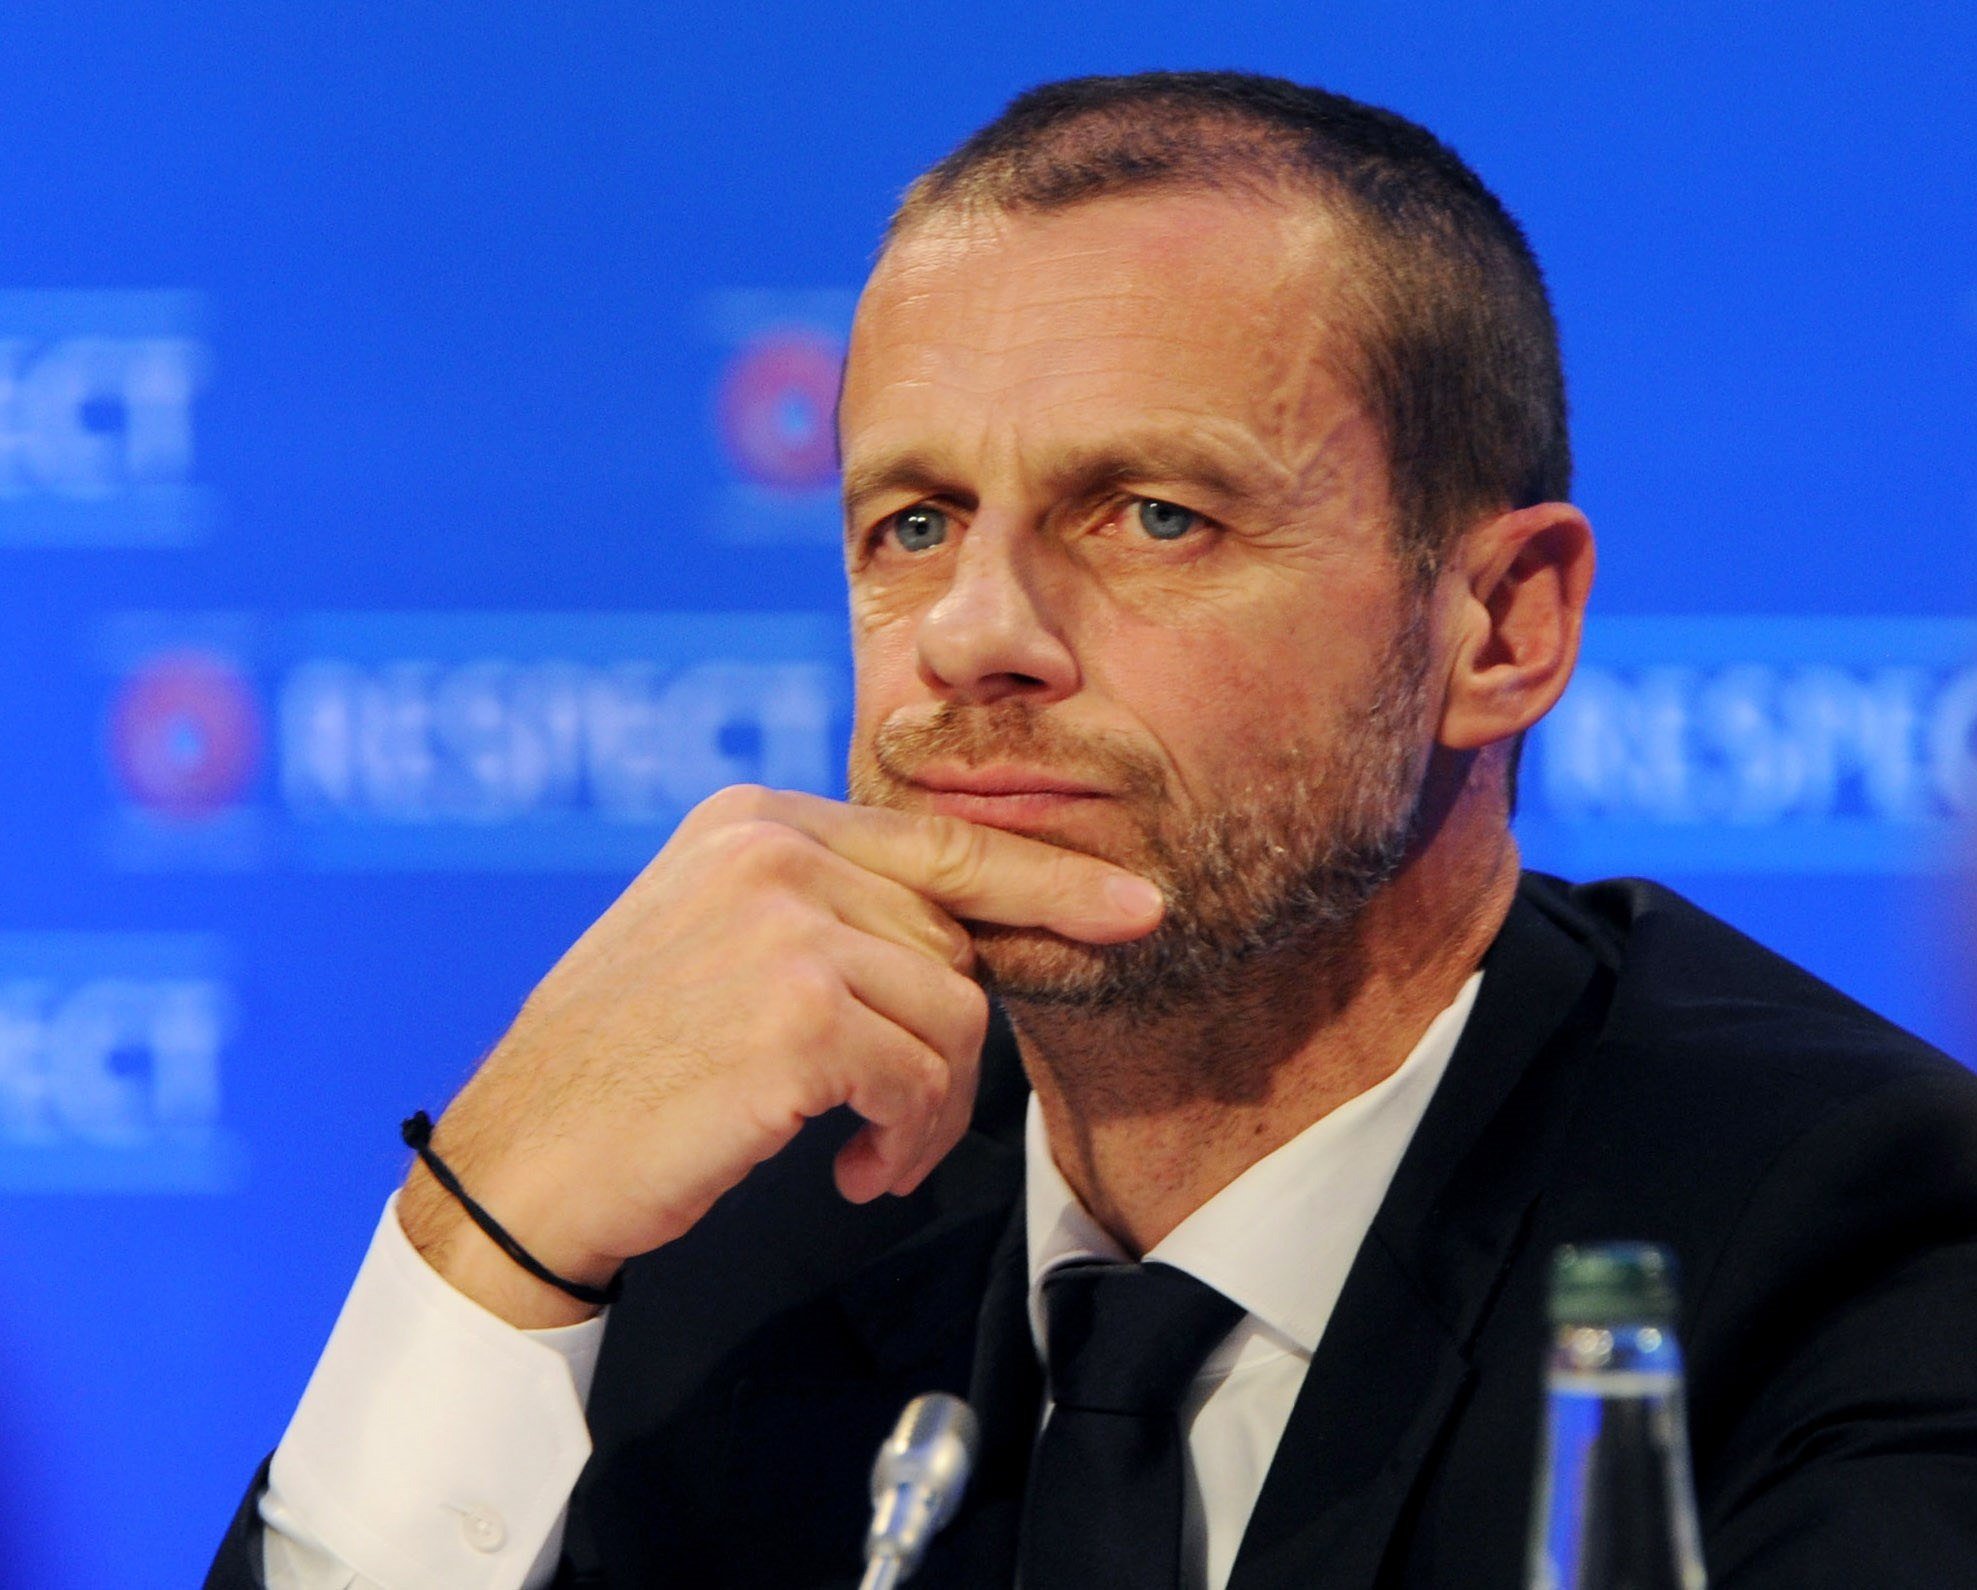 El president de la UEFA, resignat: la porta tancada serà la nova normalitat